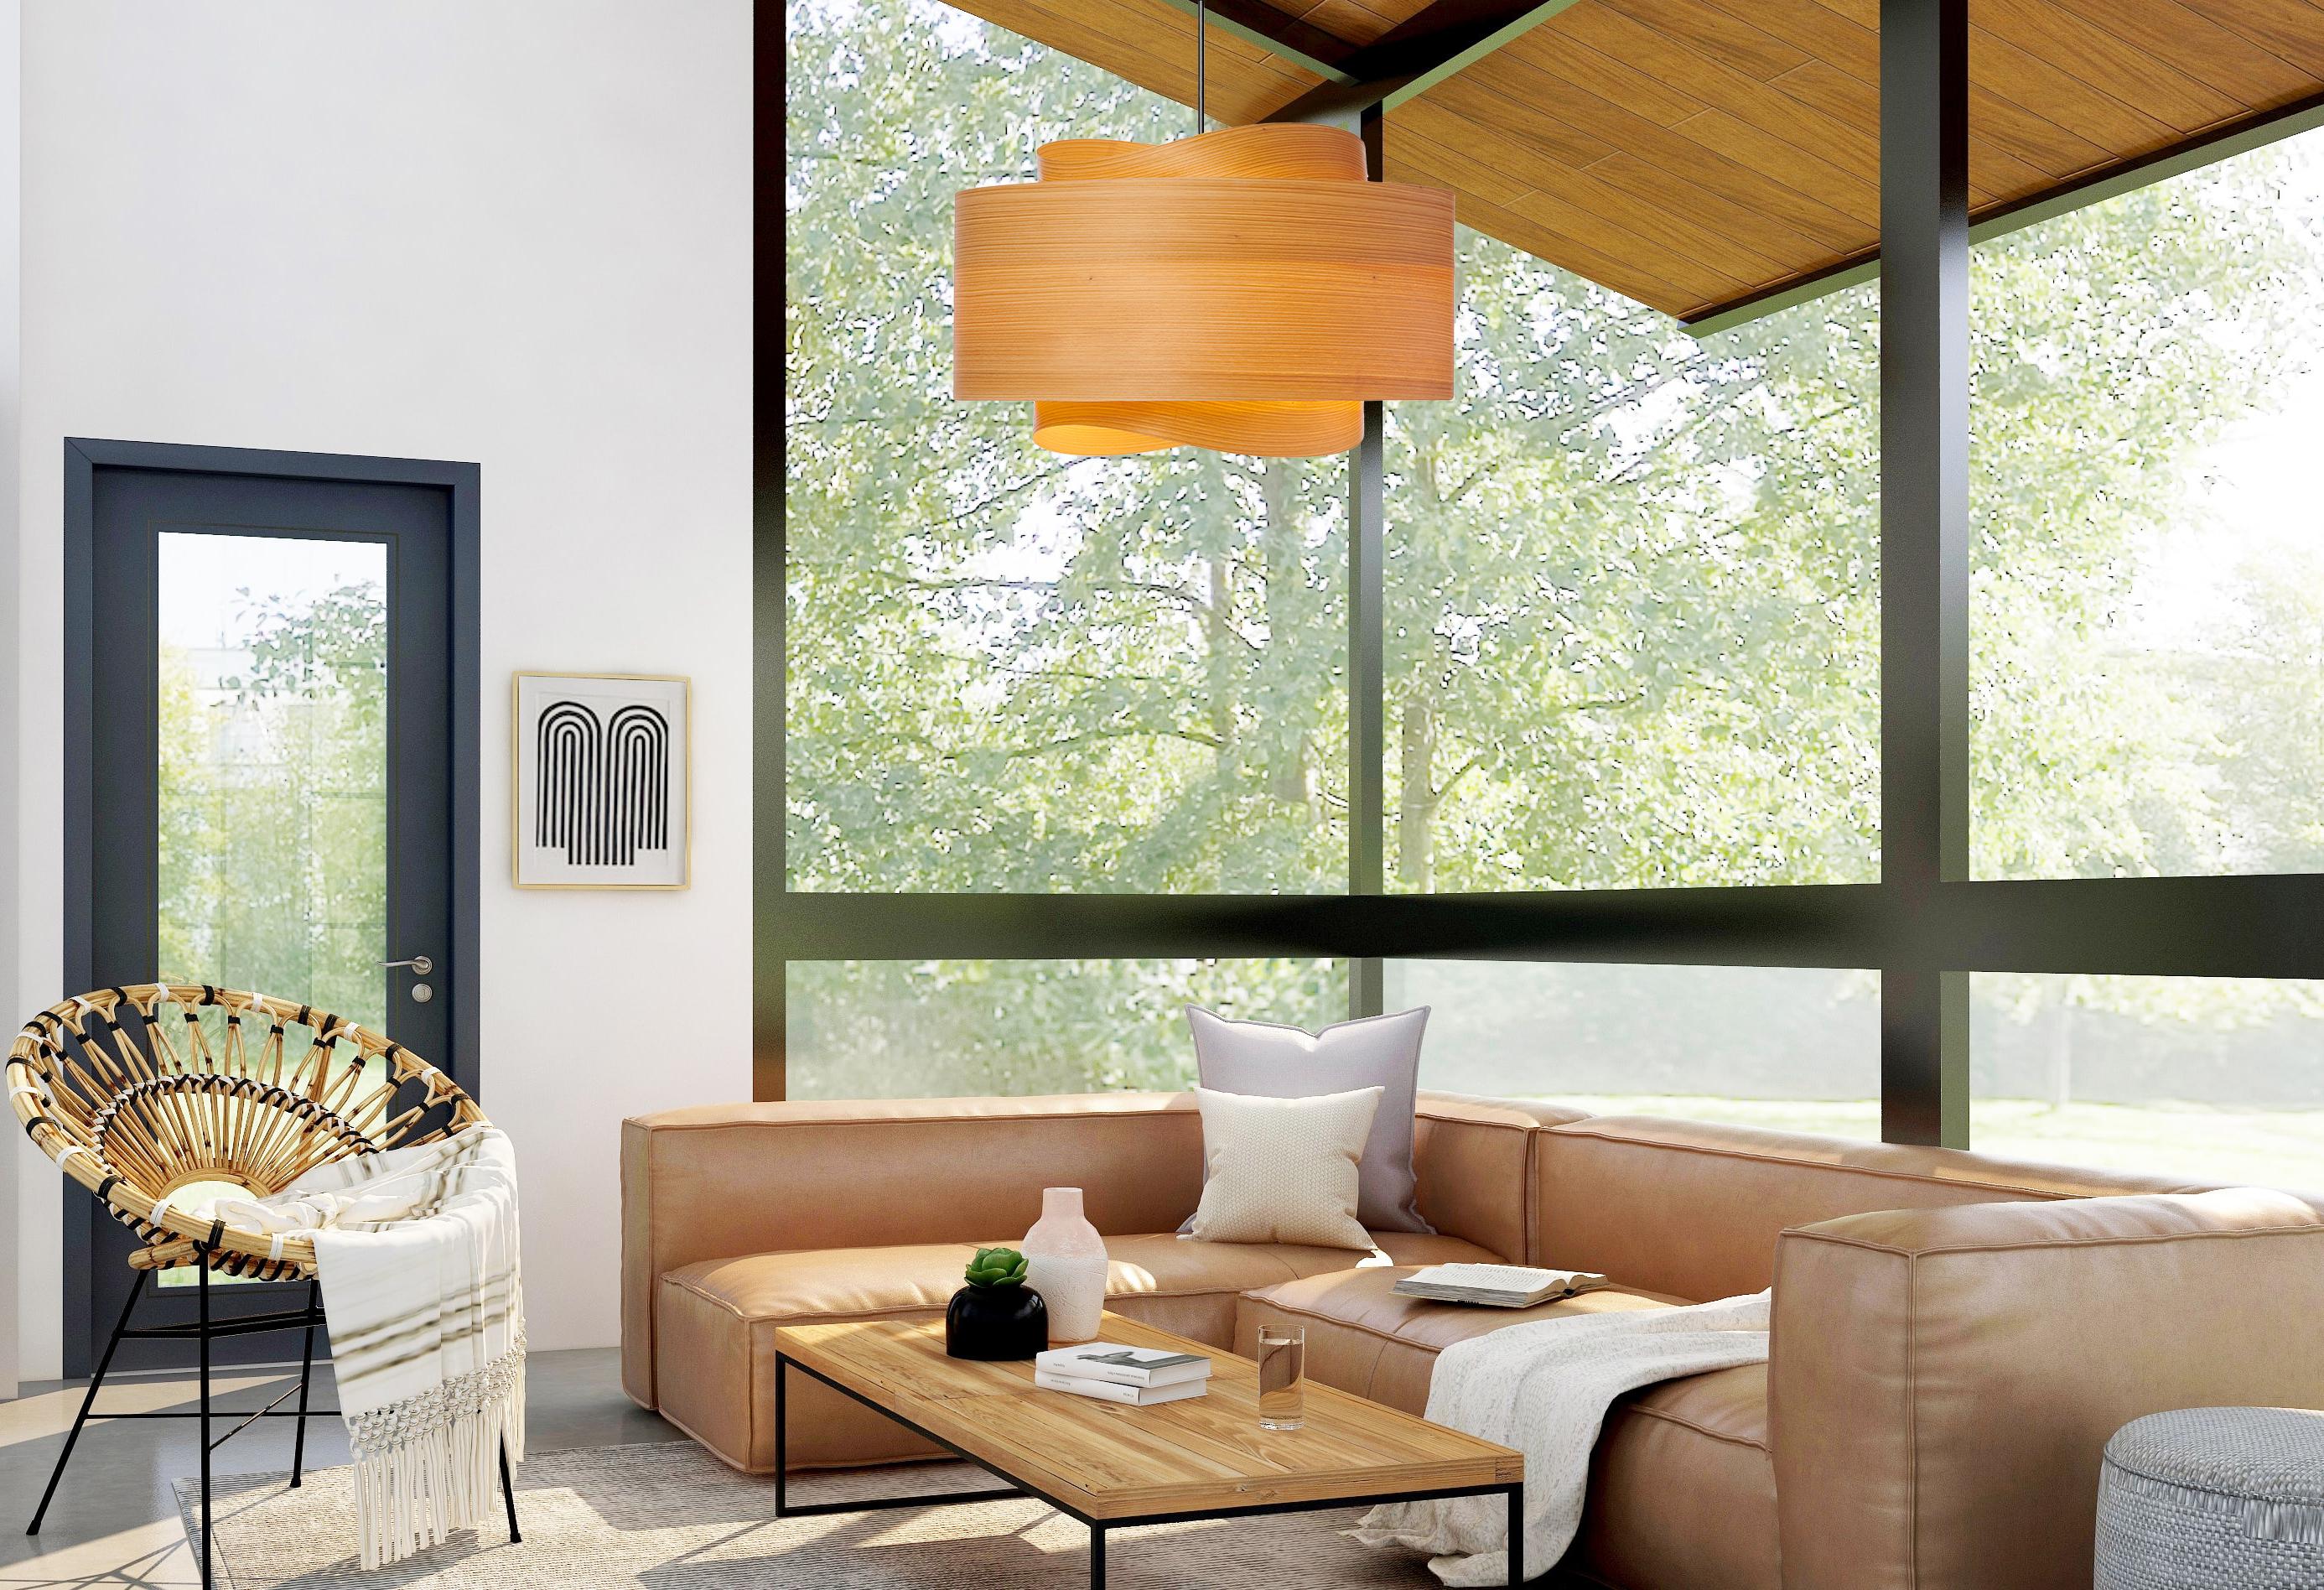 Le luminaire BOWEN est un exemple étonnant de design contemporain du milieu du siècle dernier. Avec sa silhouette minimaliste, ses tons chauds de bois et sa forme unique, cette lampe suspendue ne manquera pas d'ajouter une touche de sophistication à